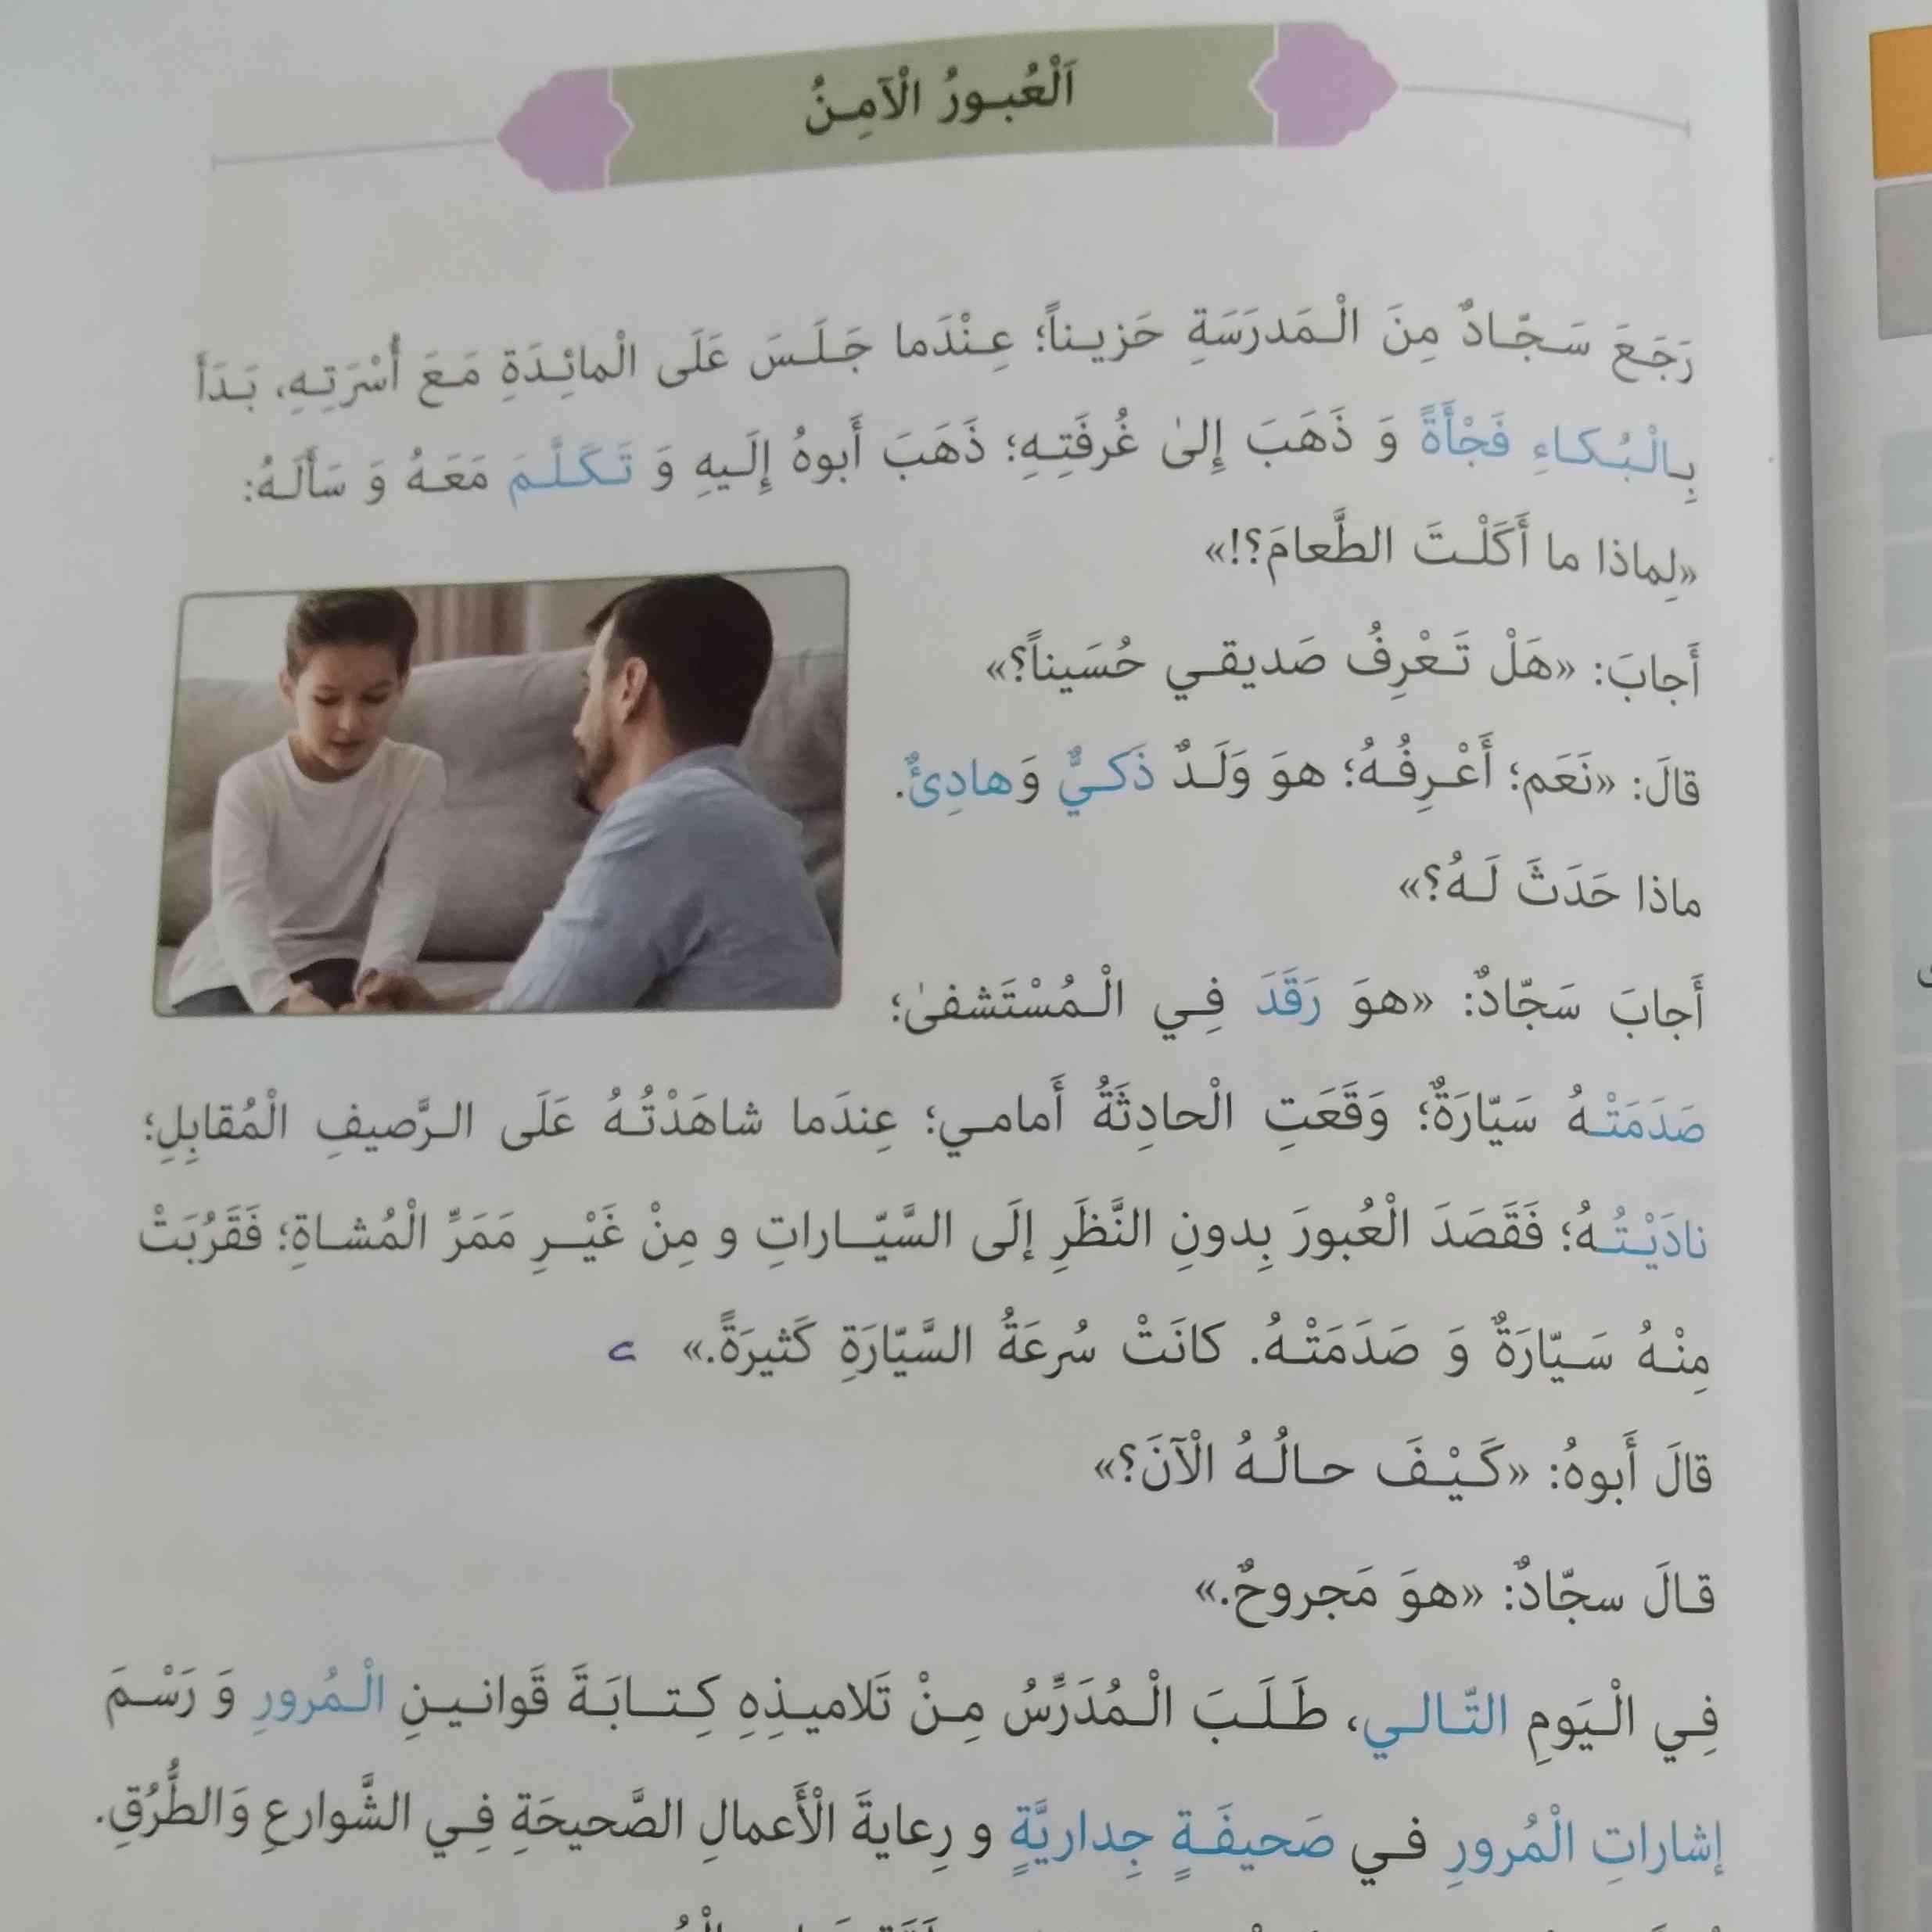 سلام لطفا صفحه 23 عربی رو ترجمه کنید ممنون